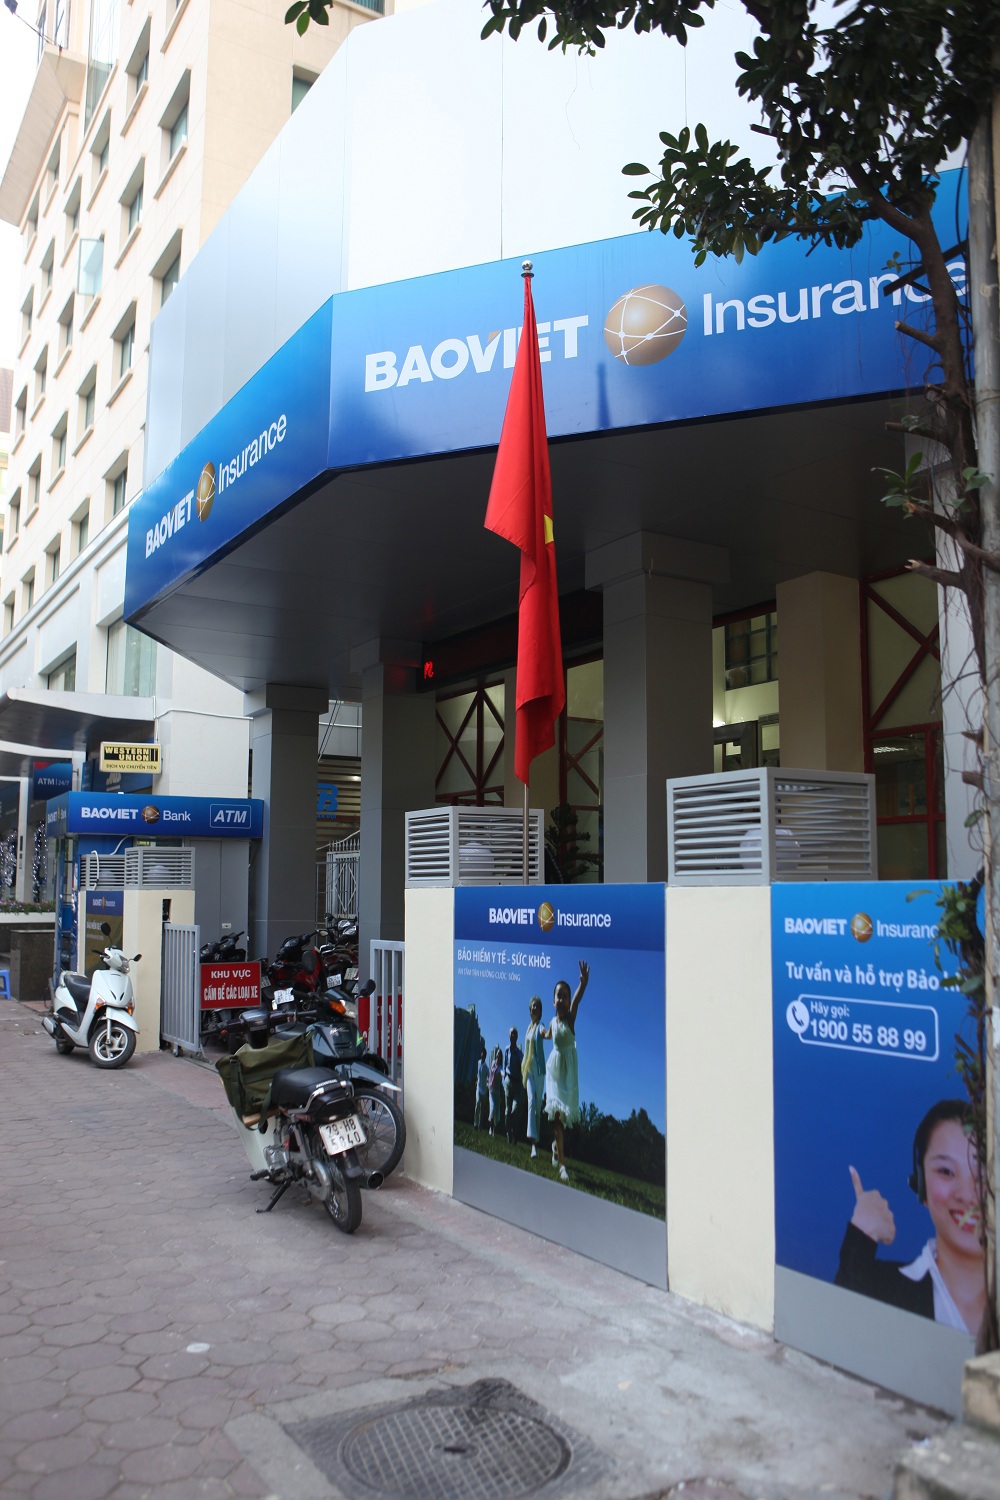 Tổng công ty Bảo hiểm Bảo Việt là doanh nghiệp hàng đầu thị trường bảo hiểm phi nhân thọ với tiềm lực tài chính mạnh, kinh nghiệm kinh doanh bảo hiểm và quản lý rủi ro.